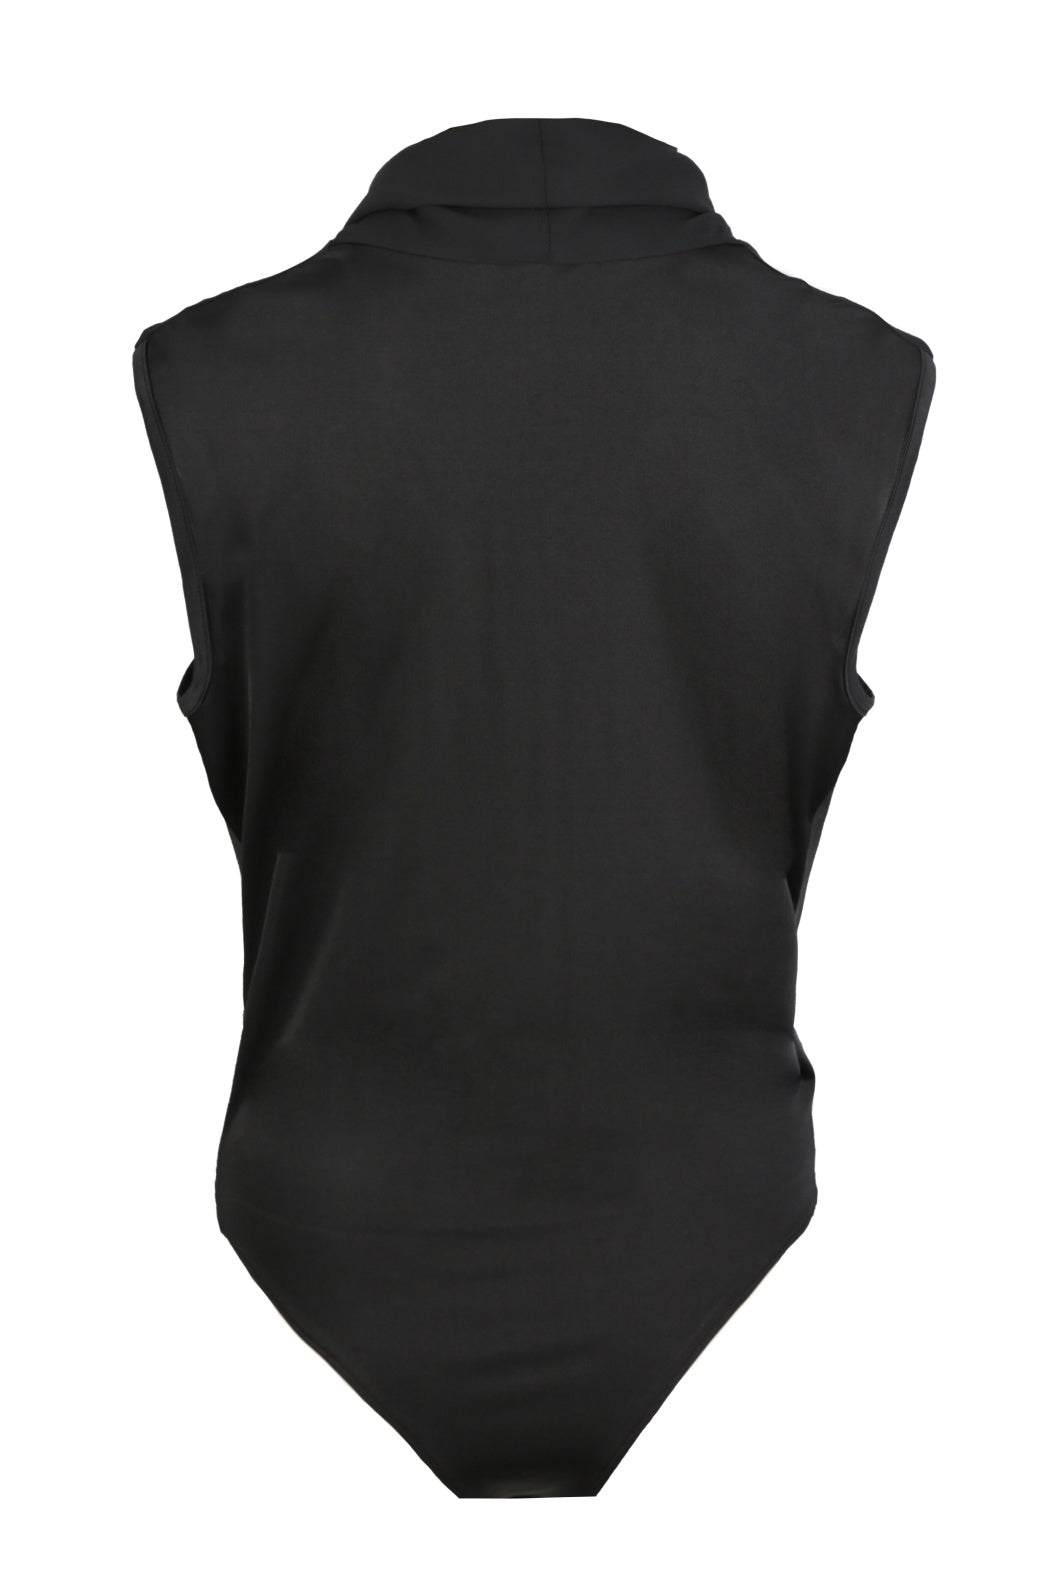 Estee Black Shawl Collar Sleeveless Bodysuit